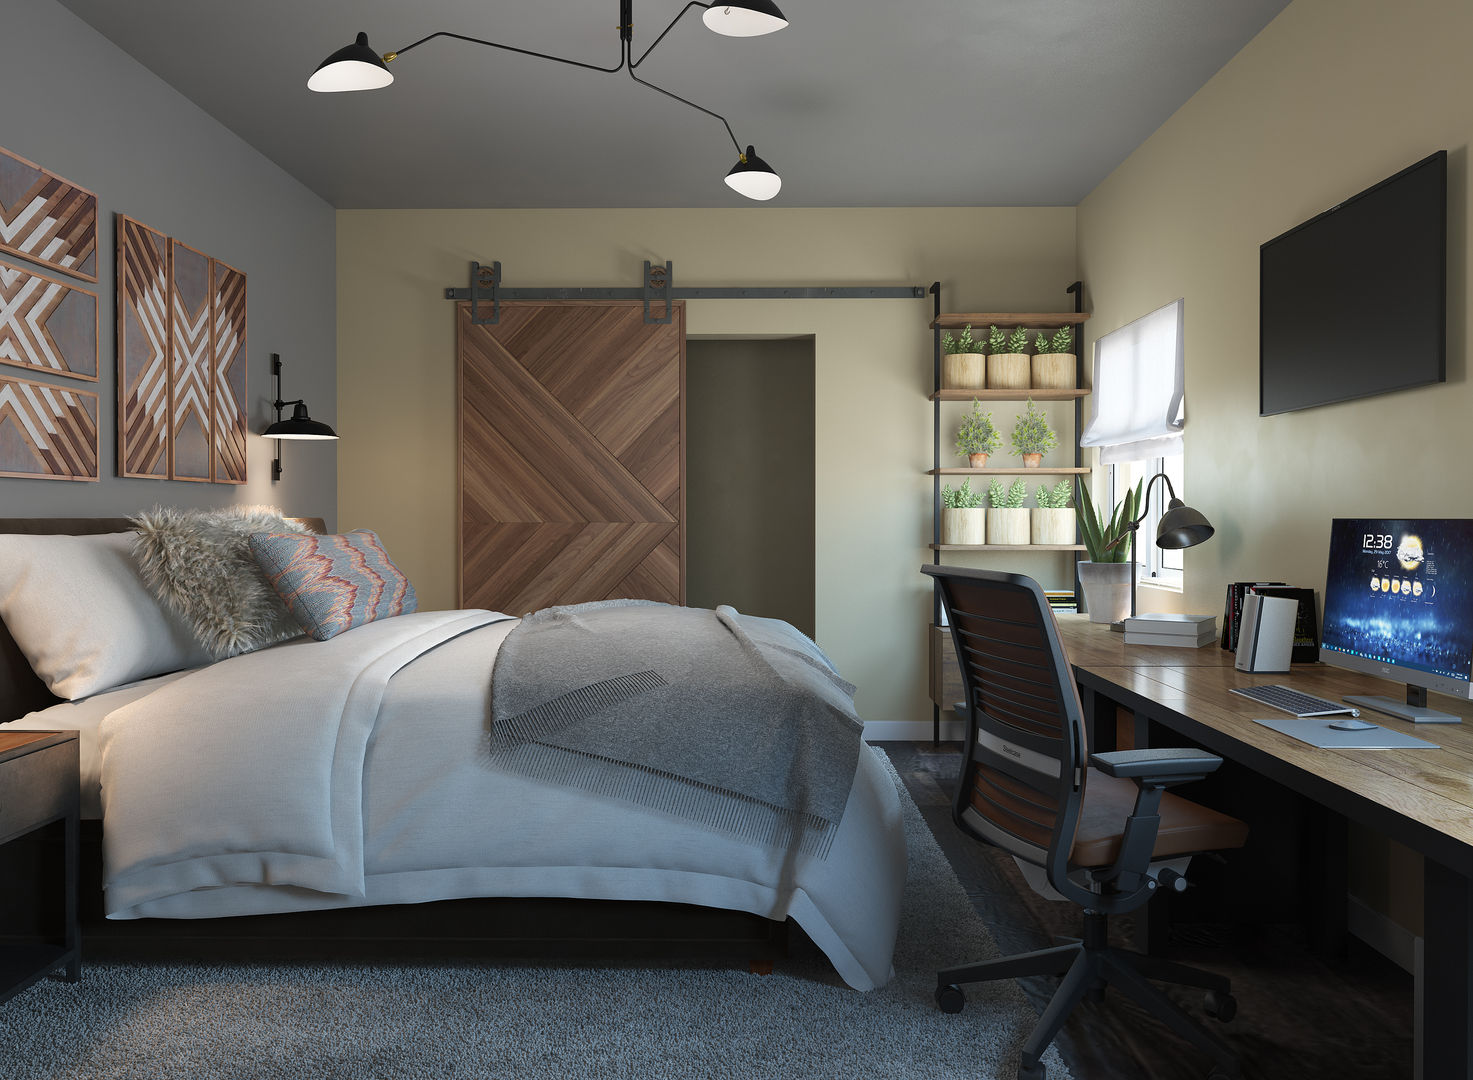 Dormitorio con zona de estudio/trabajo, Glancing EYE - Modelado y diseño 3D Glancing EYE - Modelado y diseño 3D Chambre moderne